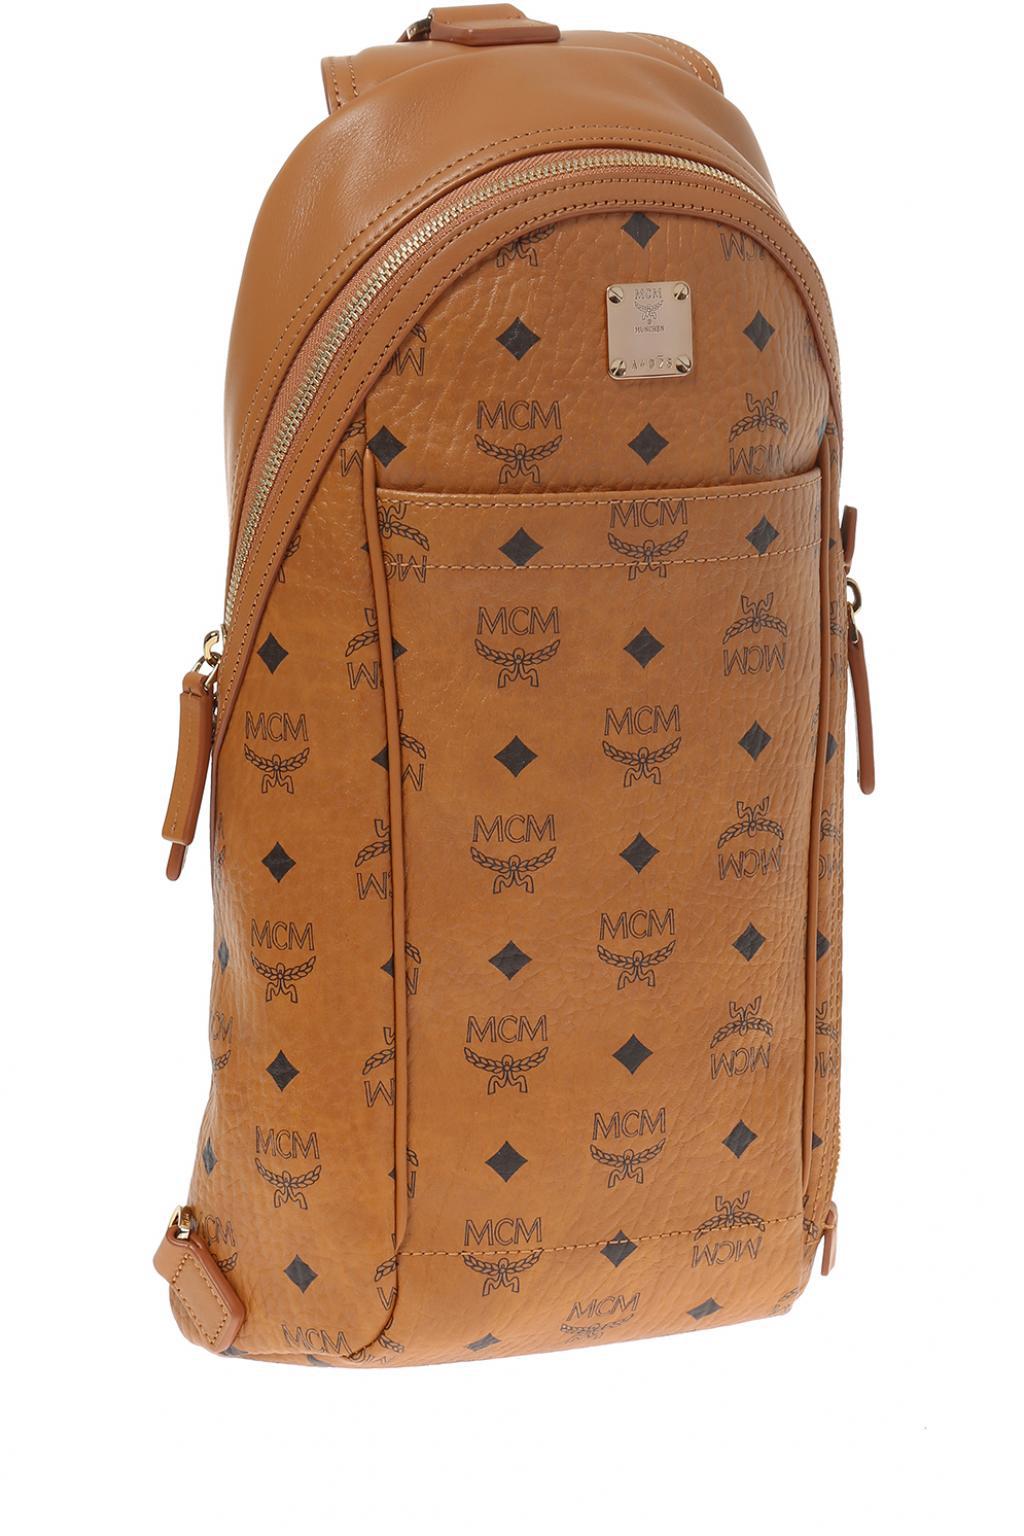 MCM One-shoulder backpack, Men's Bags